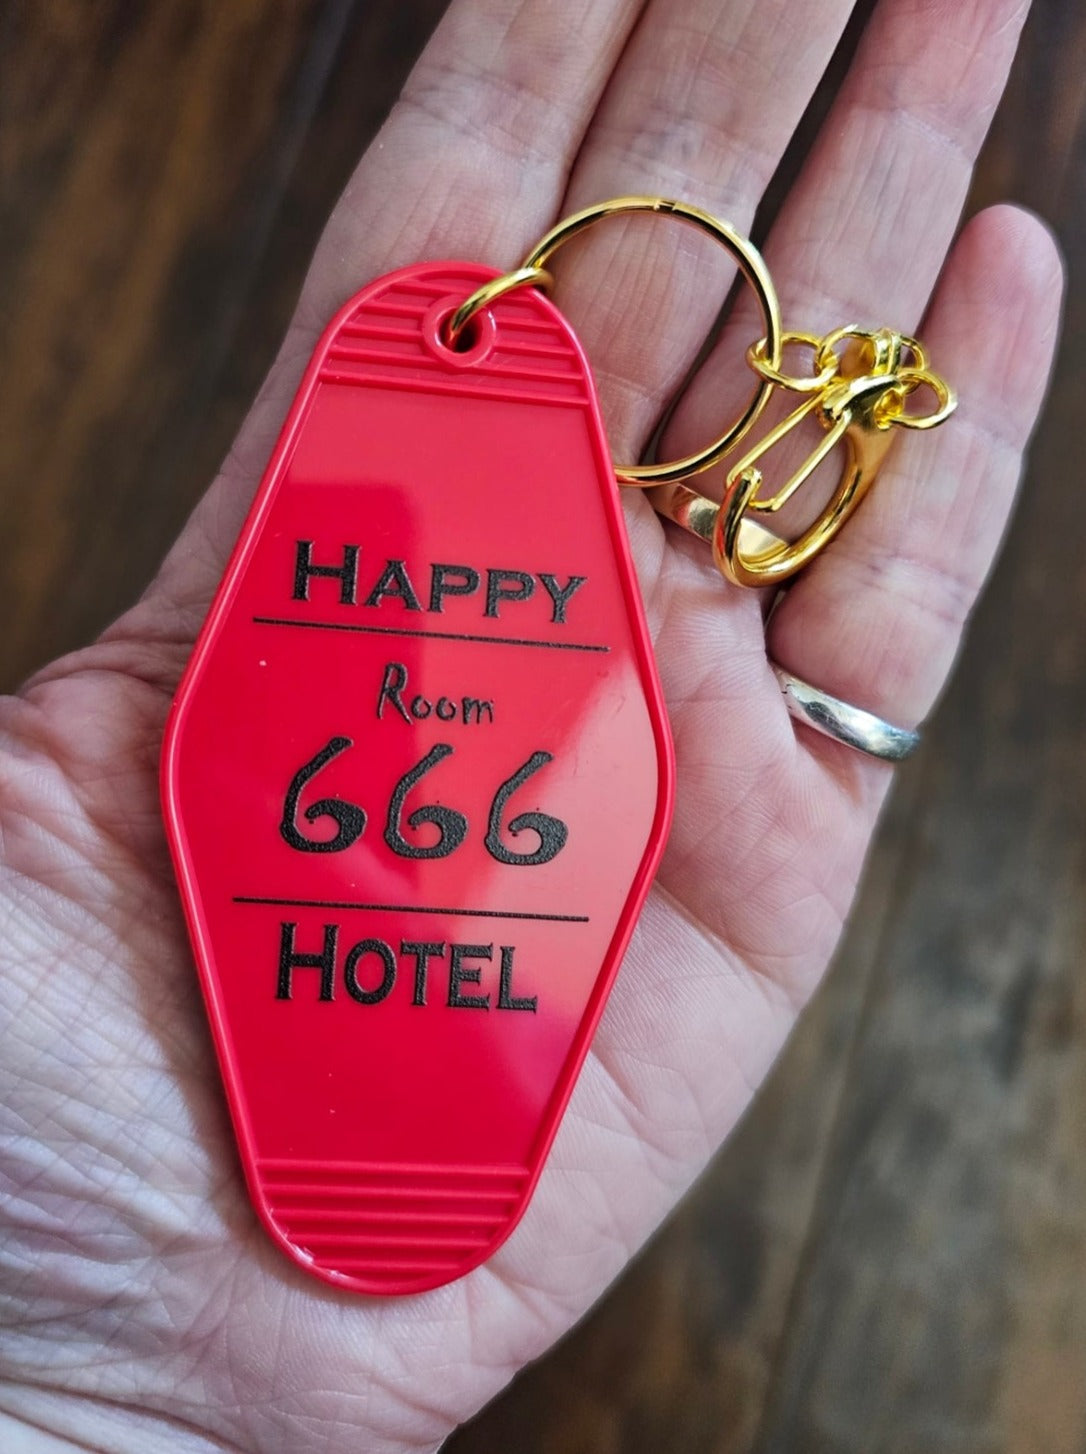 Happy Hotel - Room 666 Fan Keychain